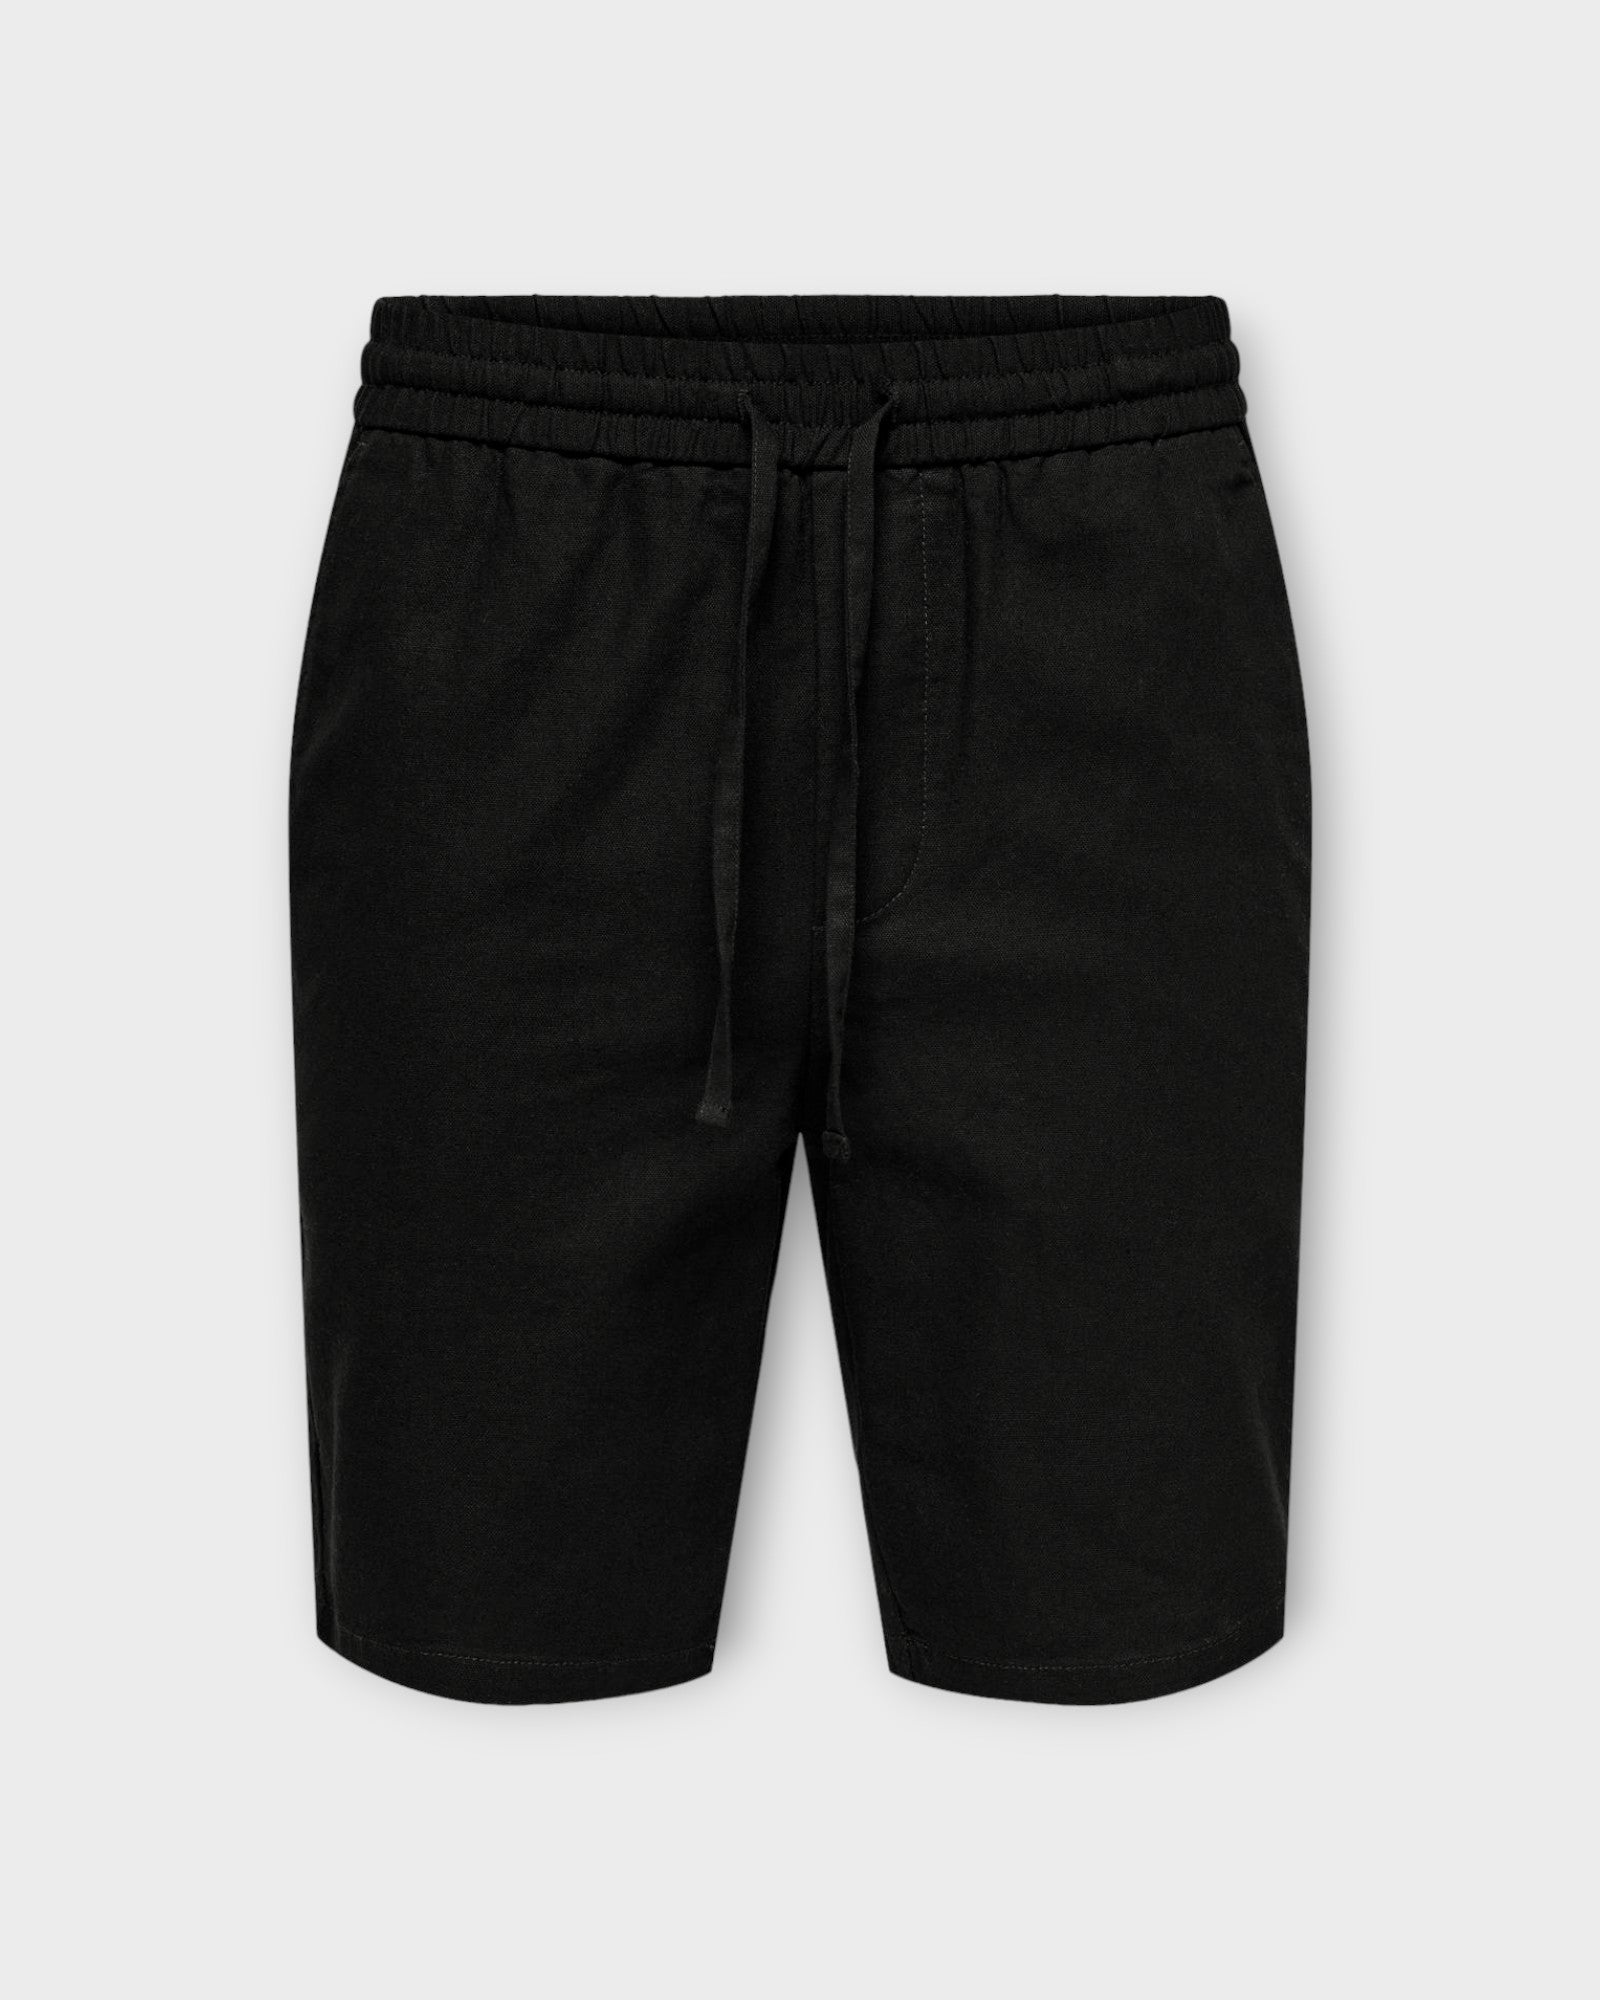 Linus 0007 Cot Lin Shorts Noos Black fra Only and Sons. Sorte hør shorts til mænd med elastik i livet. Her set forfra.